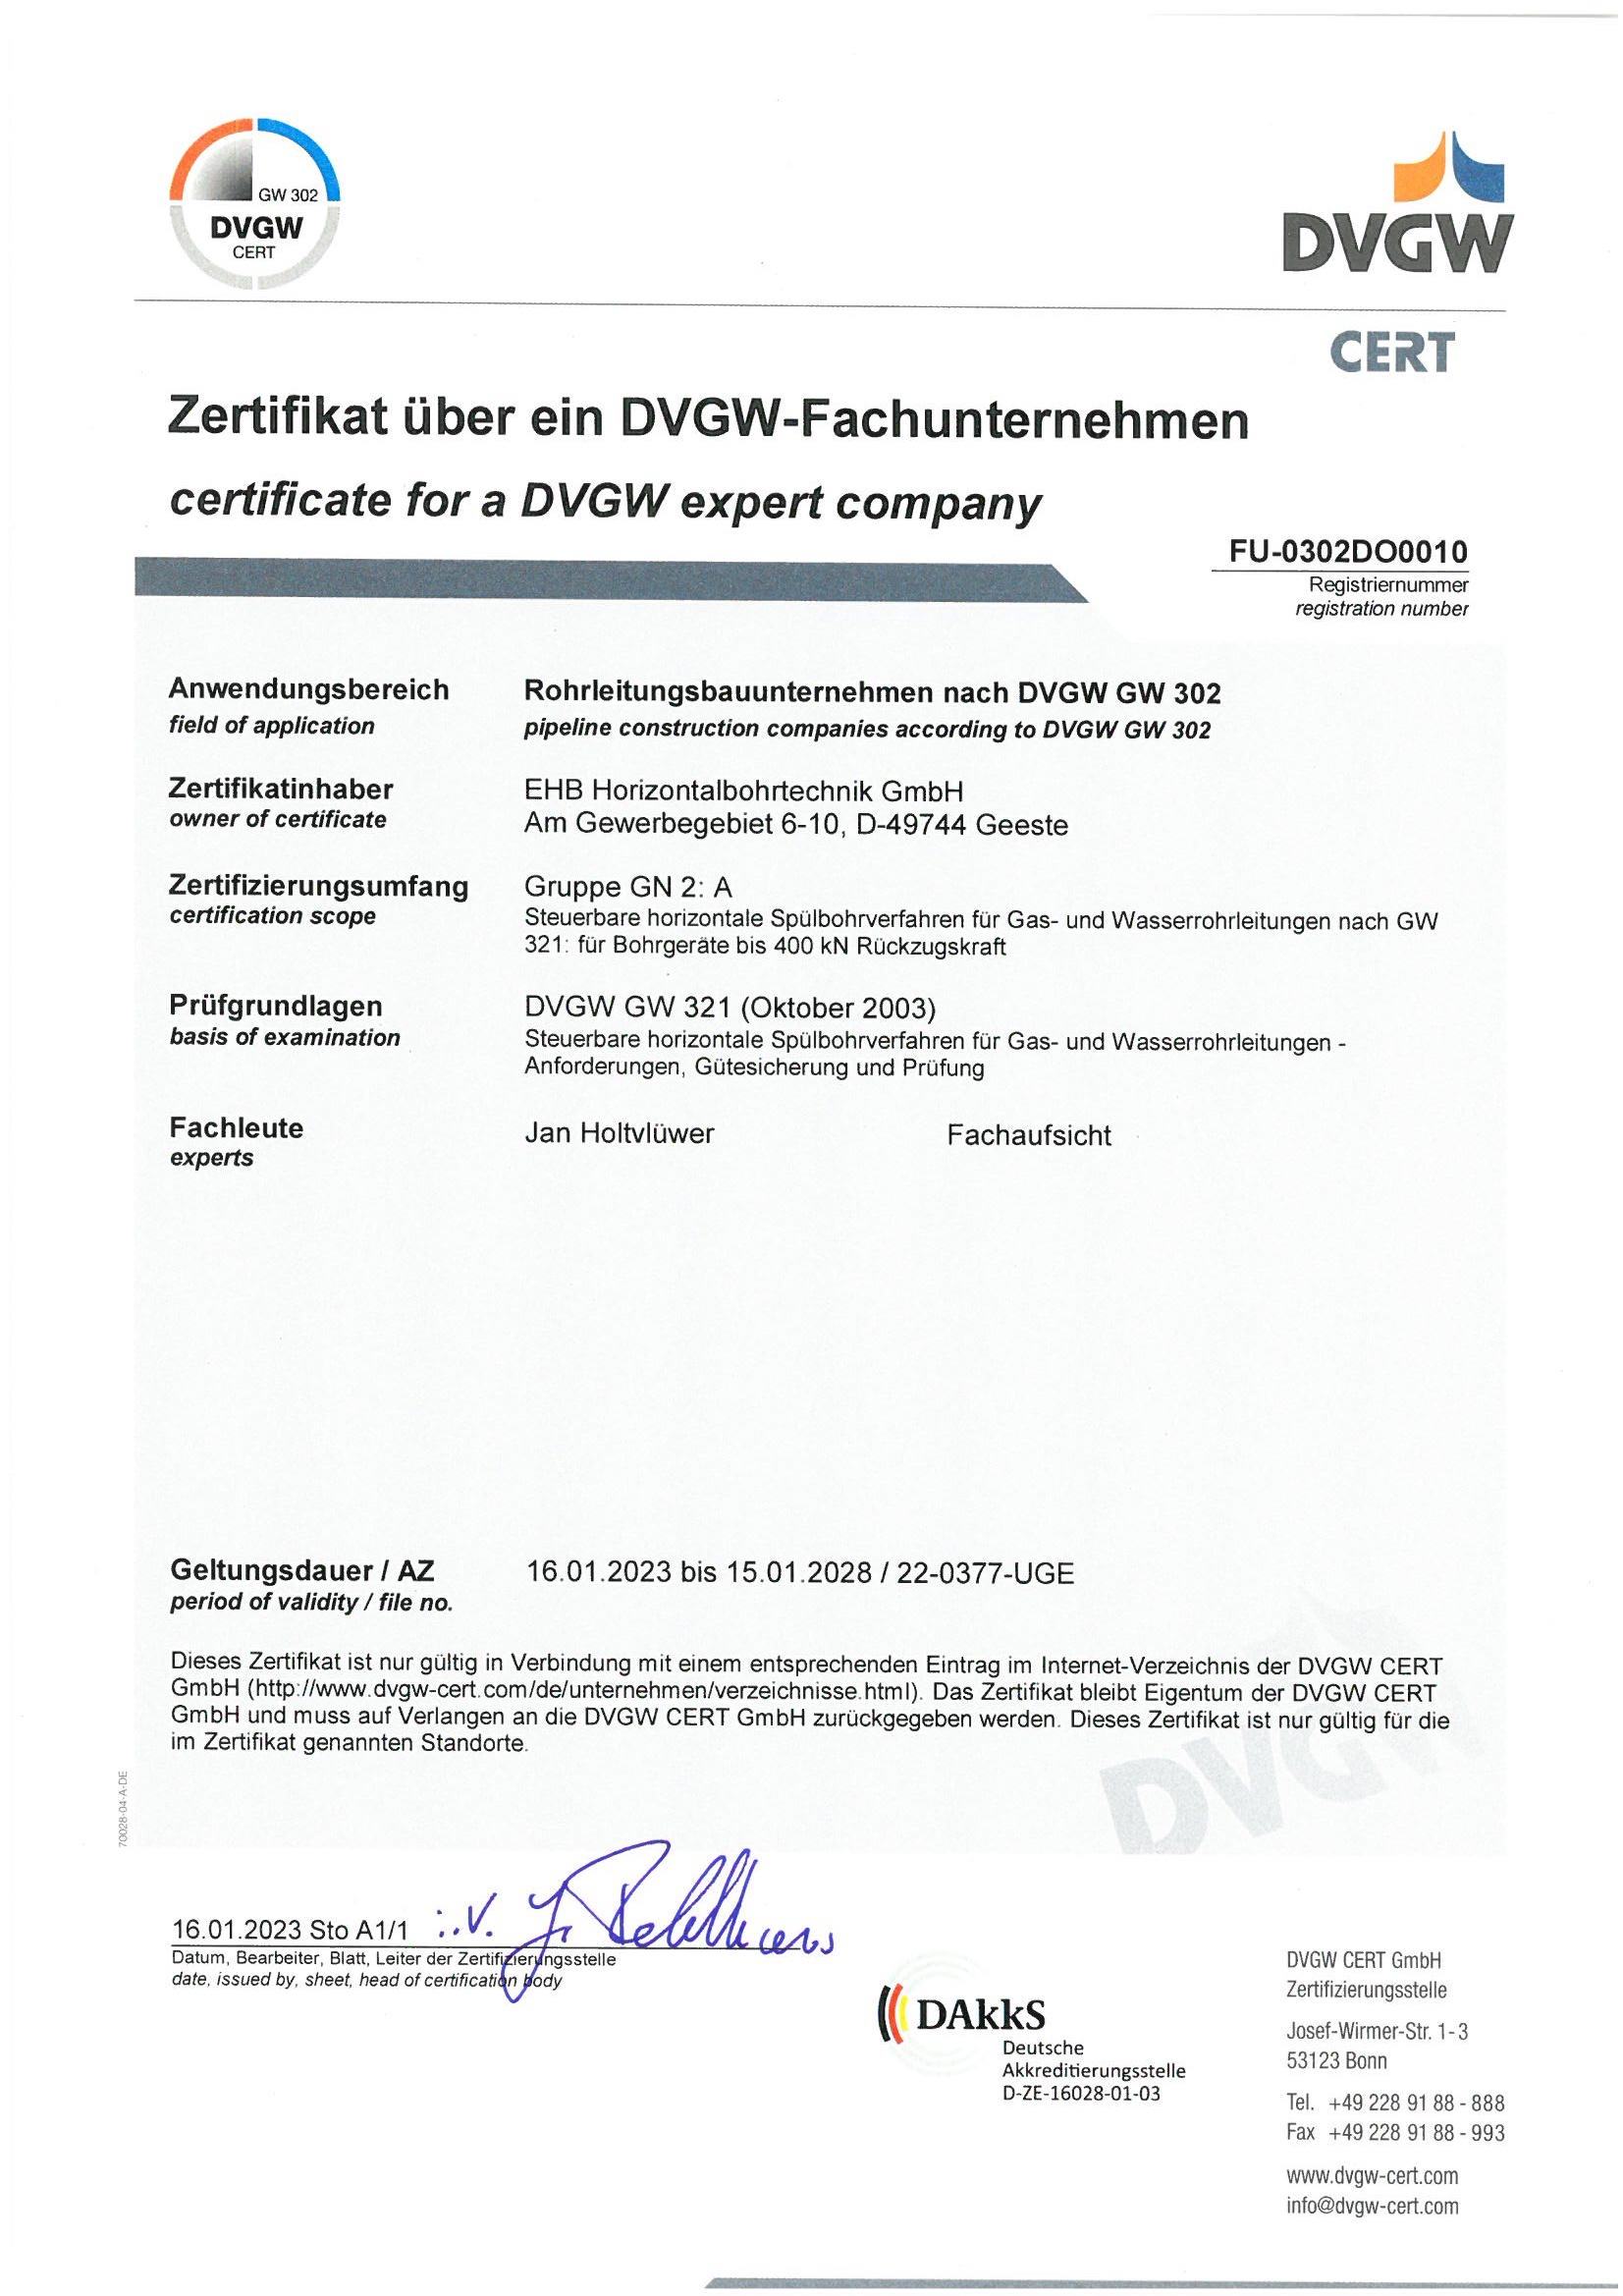 Zertifikat DVGW Fachunternehmer nach GW 302 GN 2_A.jpg